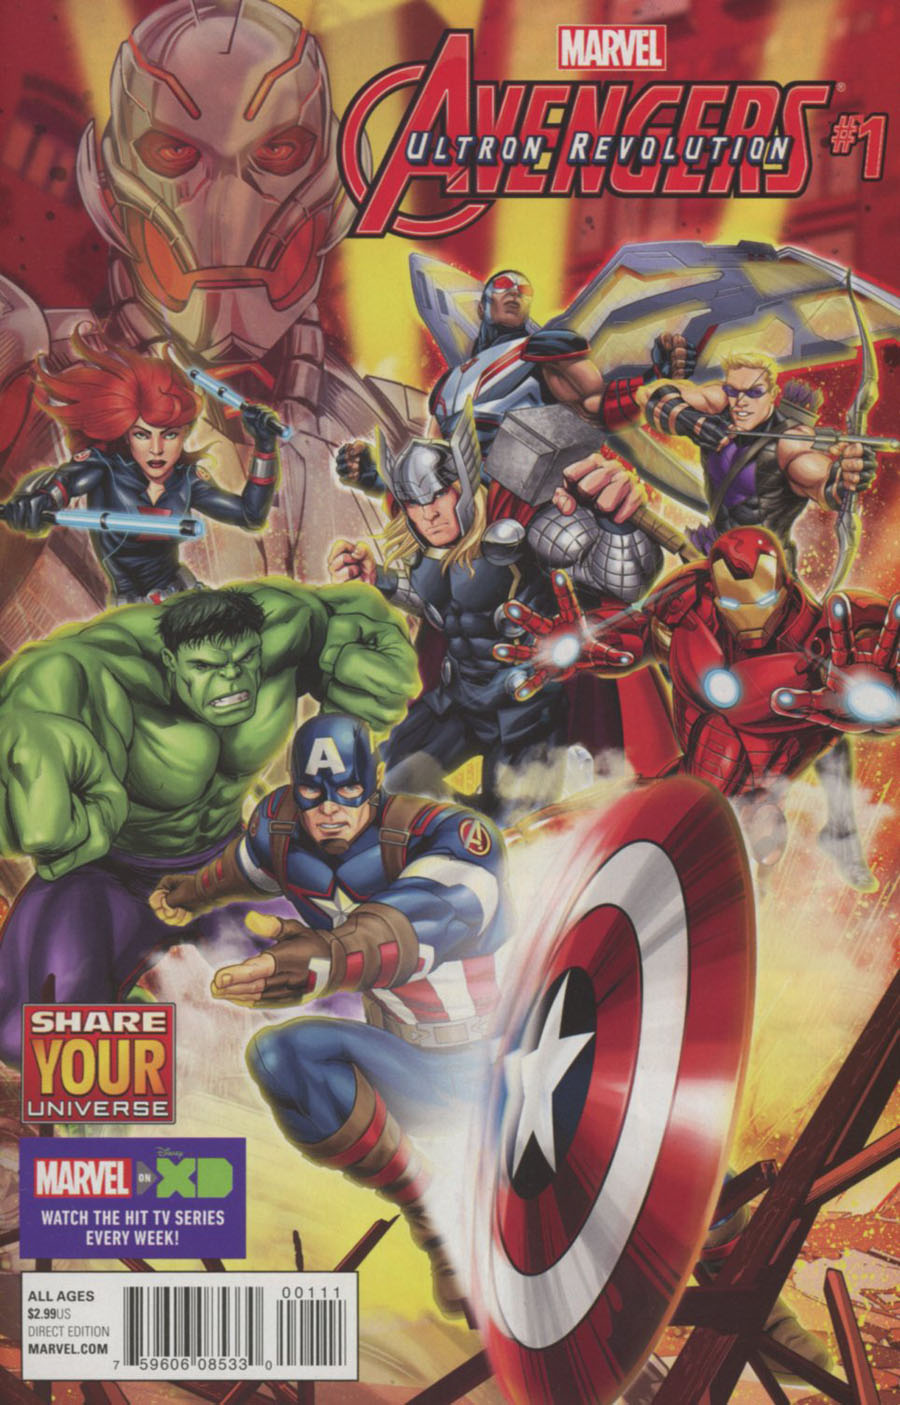 Marvel Universe Avengers Ultron Revolution #1